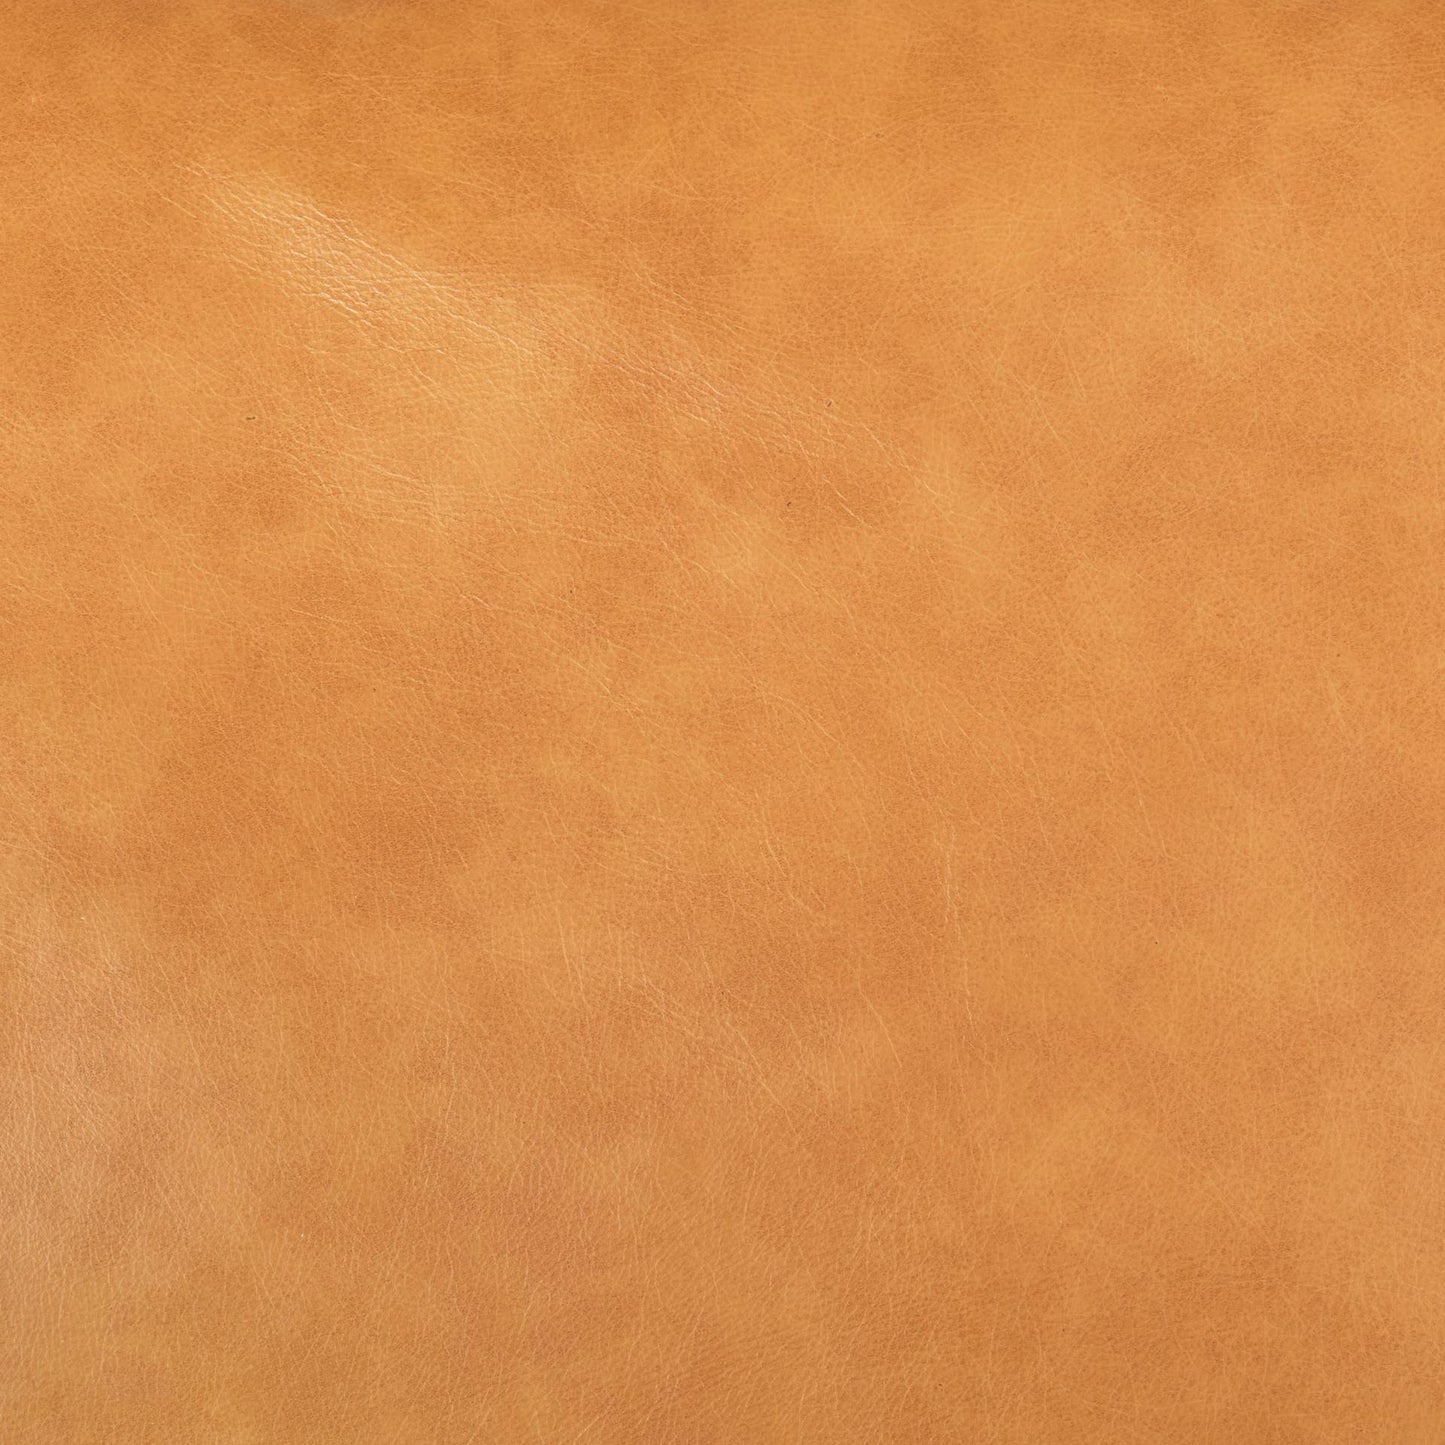 Olaf 88.2L x 37.8W x 35.0H Tan Leather Sofa